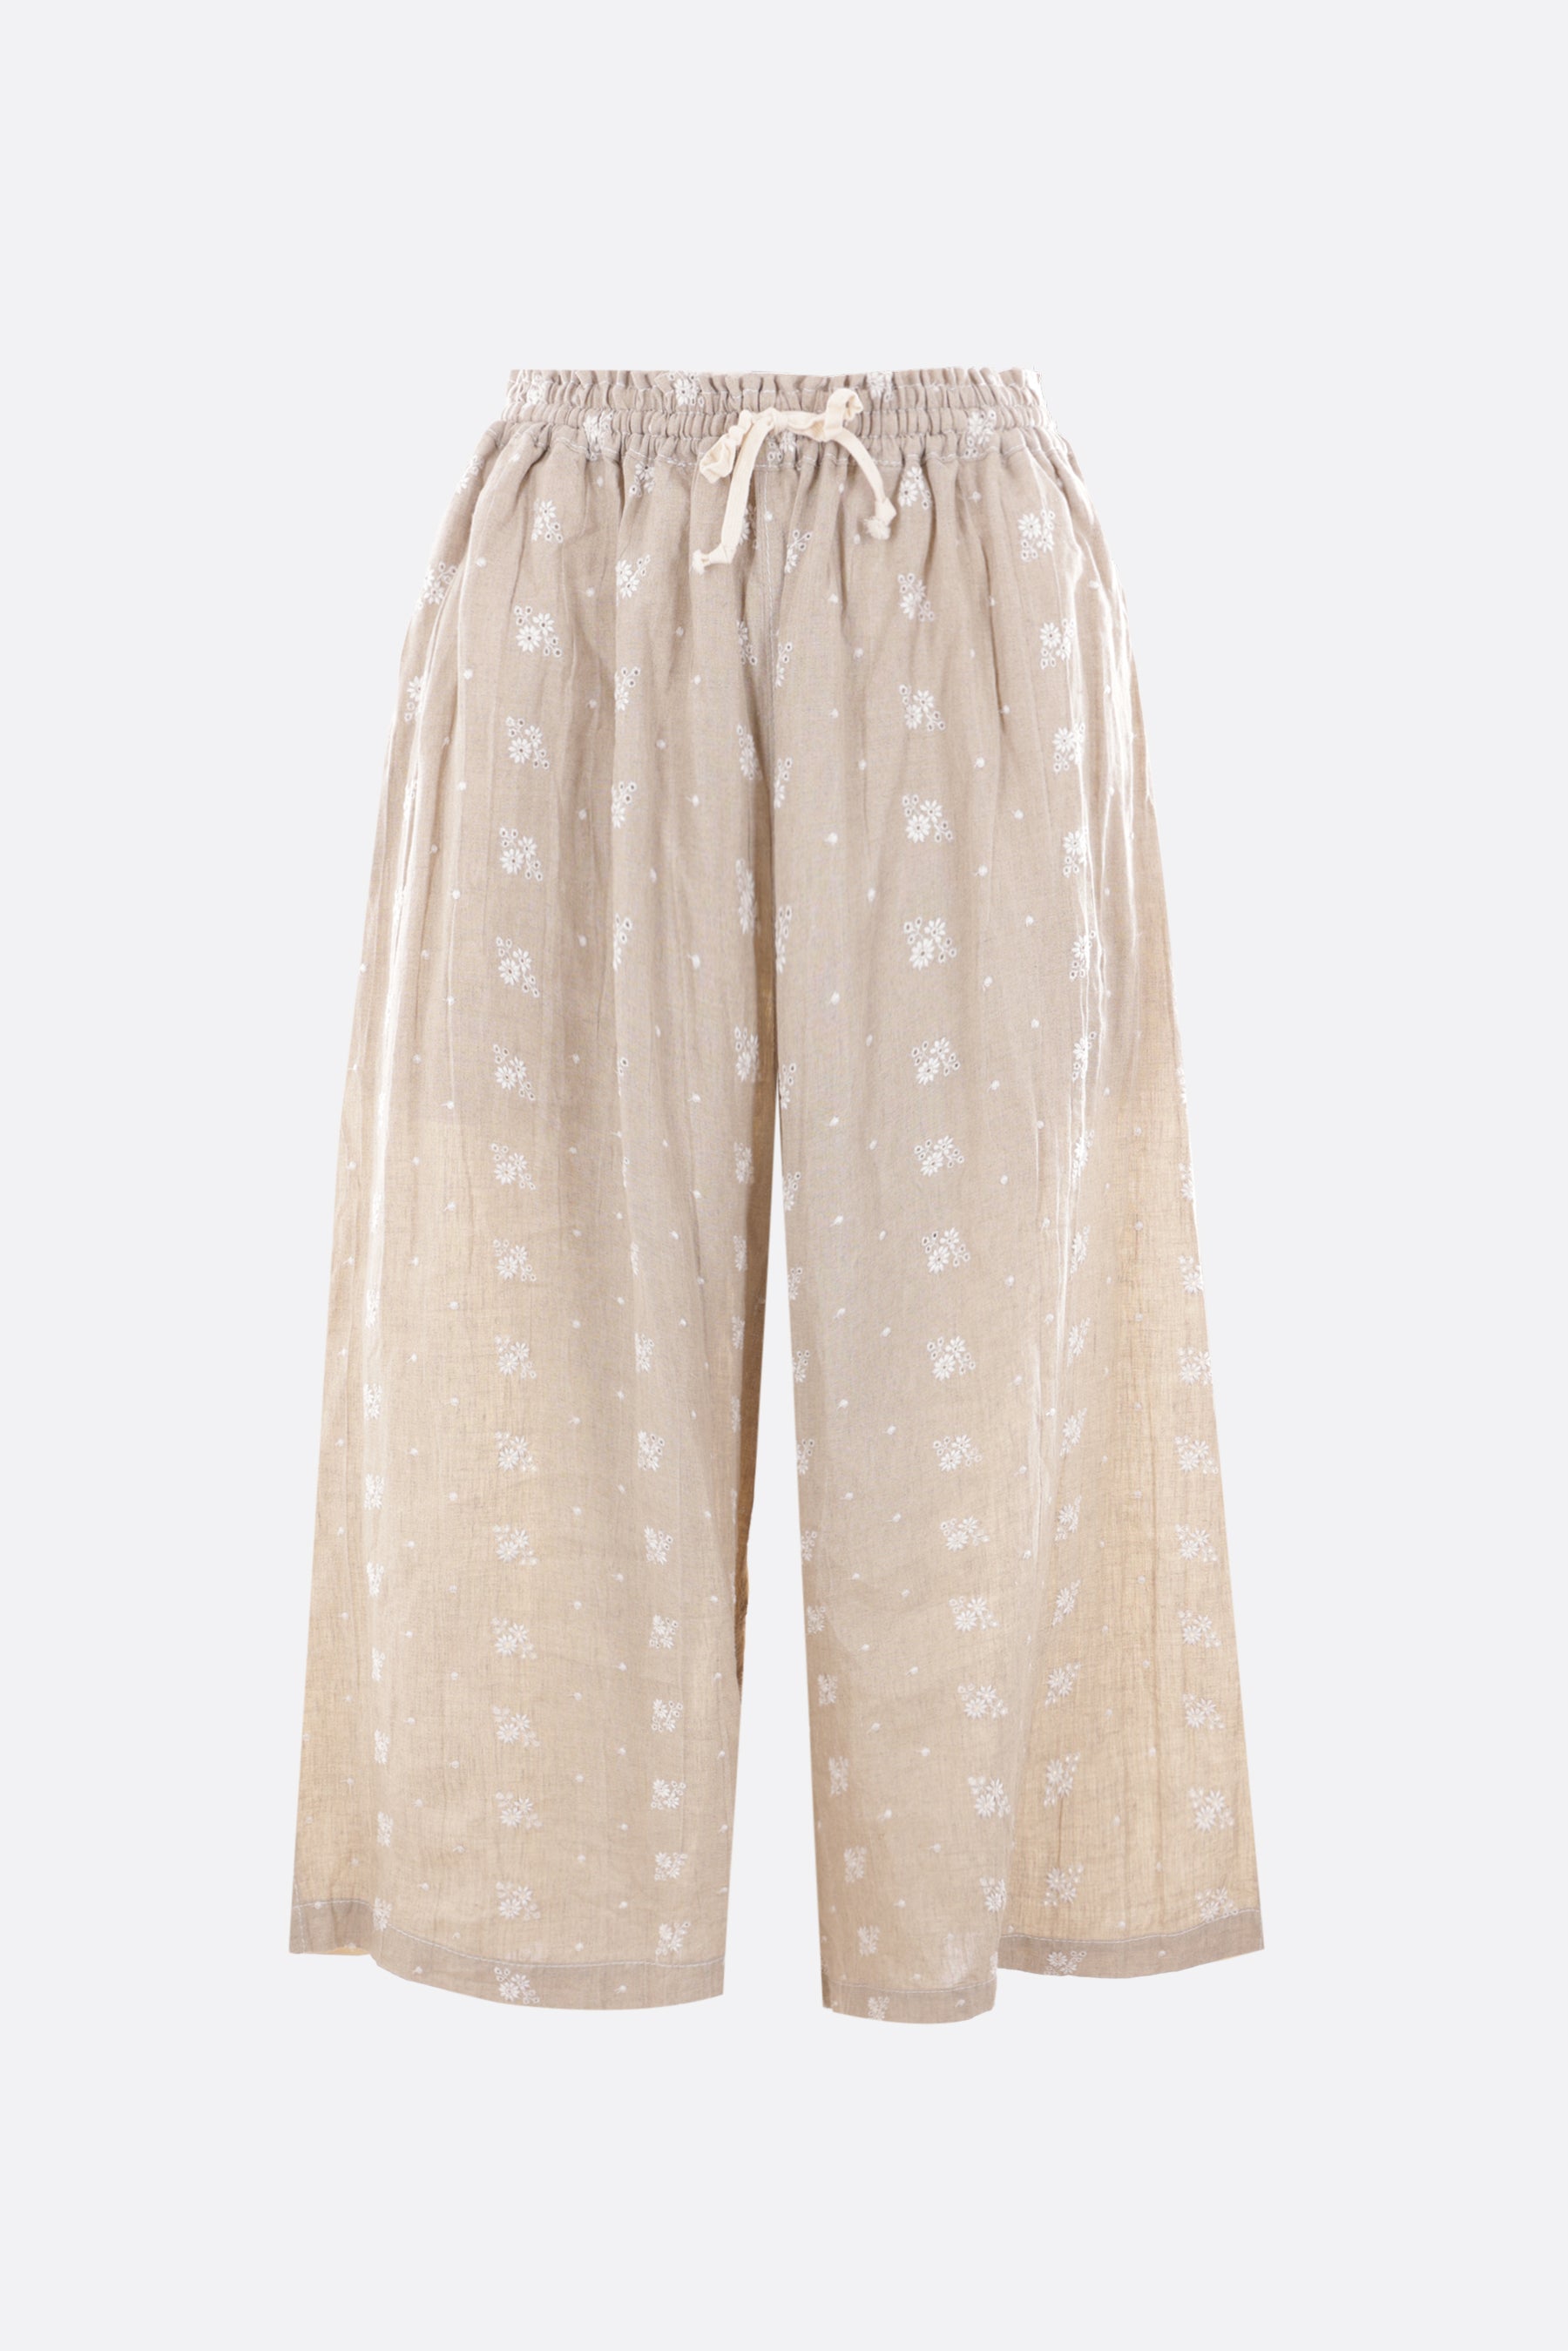 pantalone cropped in lino e cotone ricamo floreale